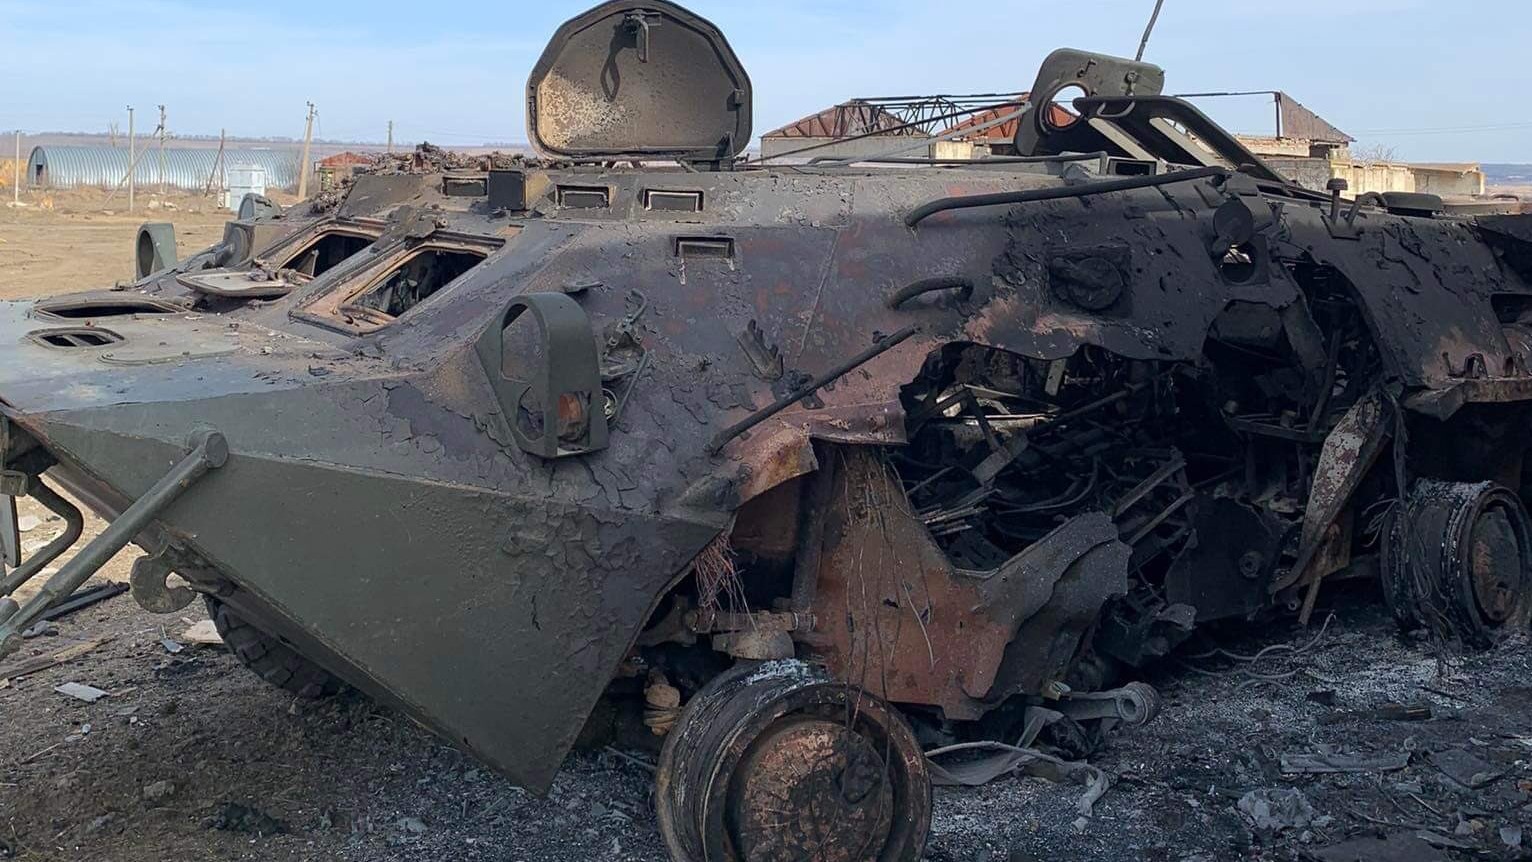 صورة متناقلة على وسائل التواصل الاجتماعي لآلية عسكرية روسية مدمرة في ميكولايف، ضمن رتل من الآليات وقعت في فخ نصبه الجيش الأوكراني